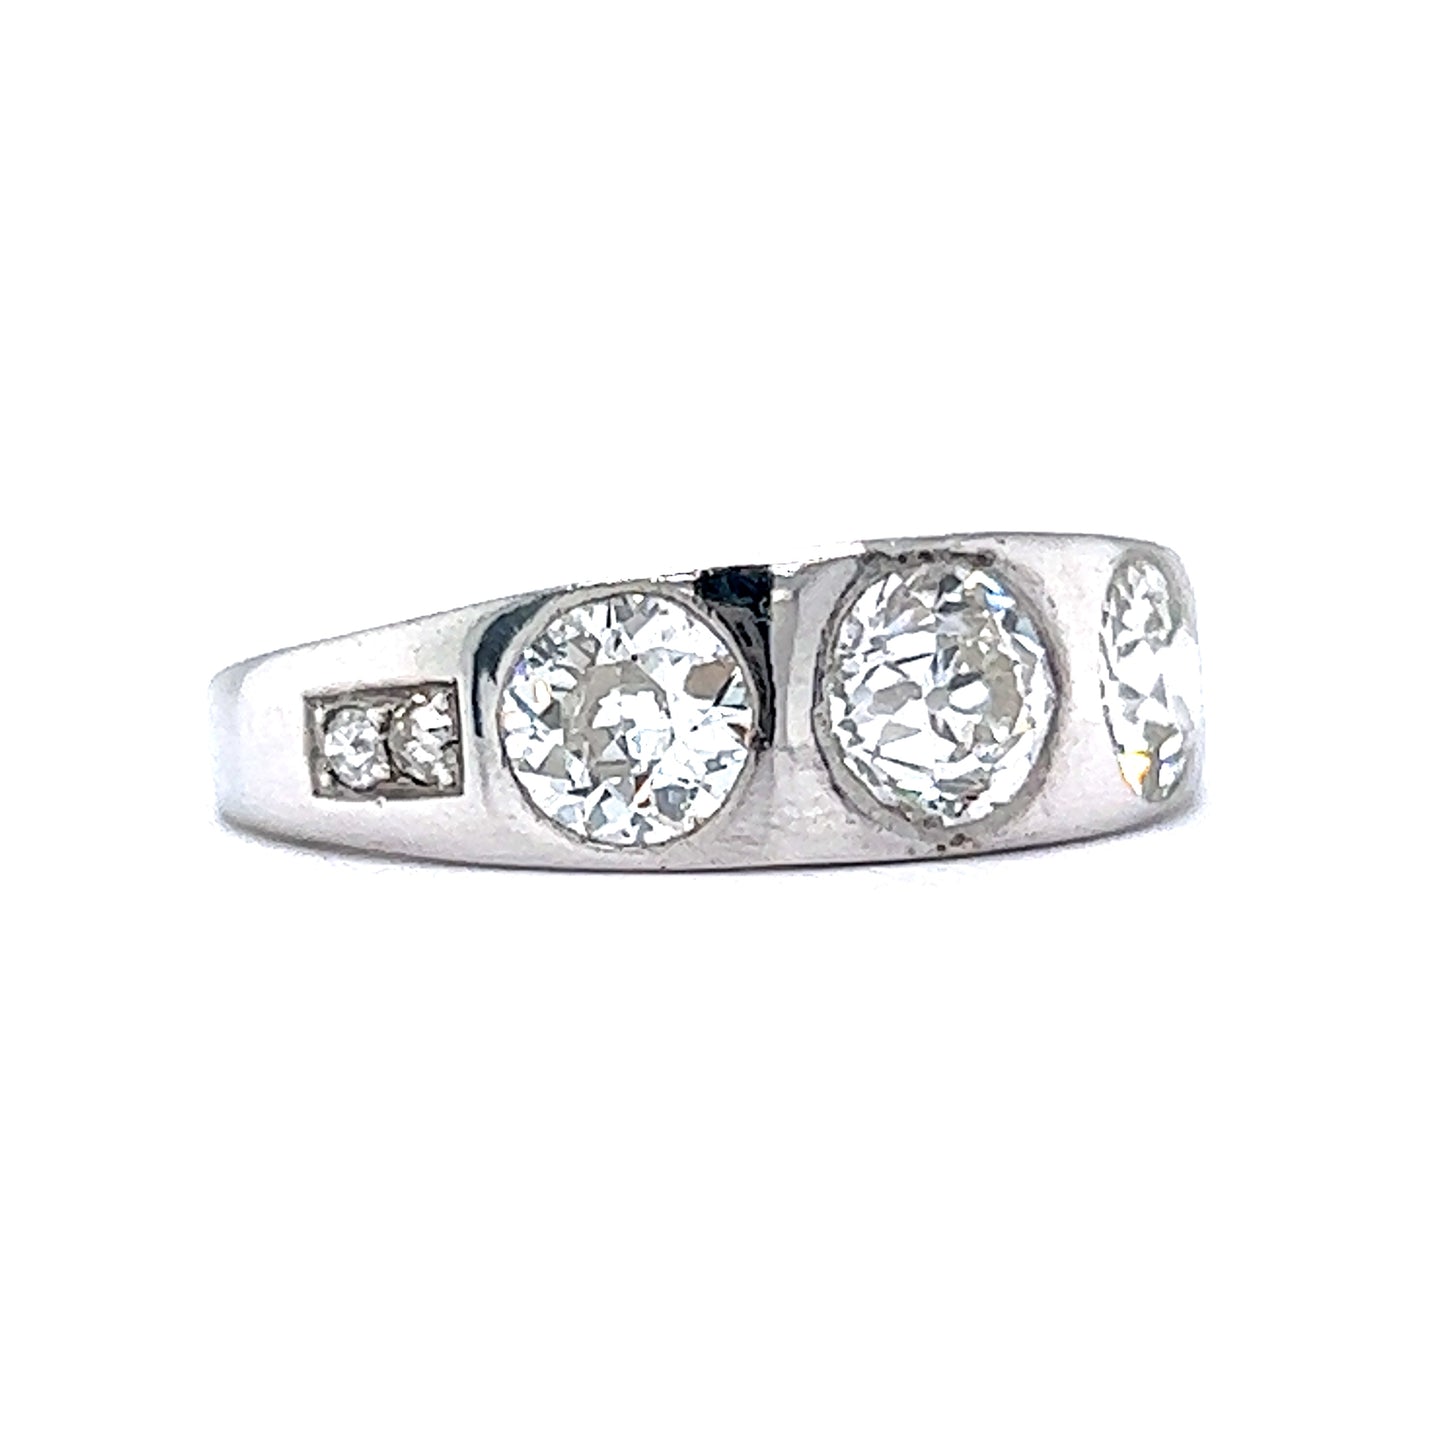 Antique Art Deco Diamond Ring in Platinum